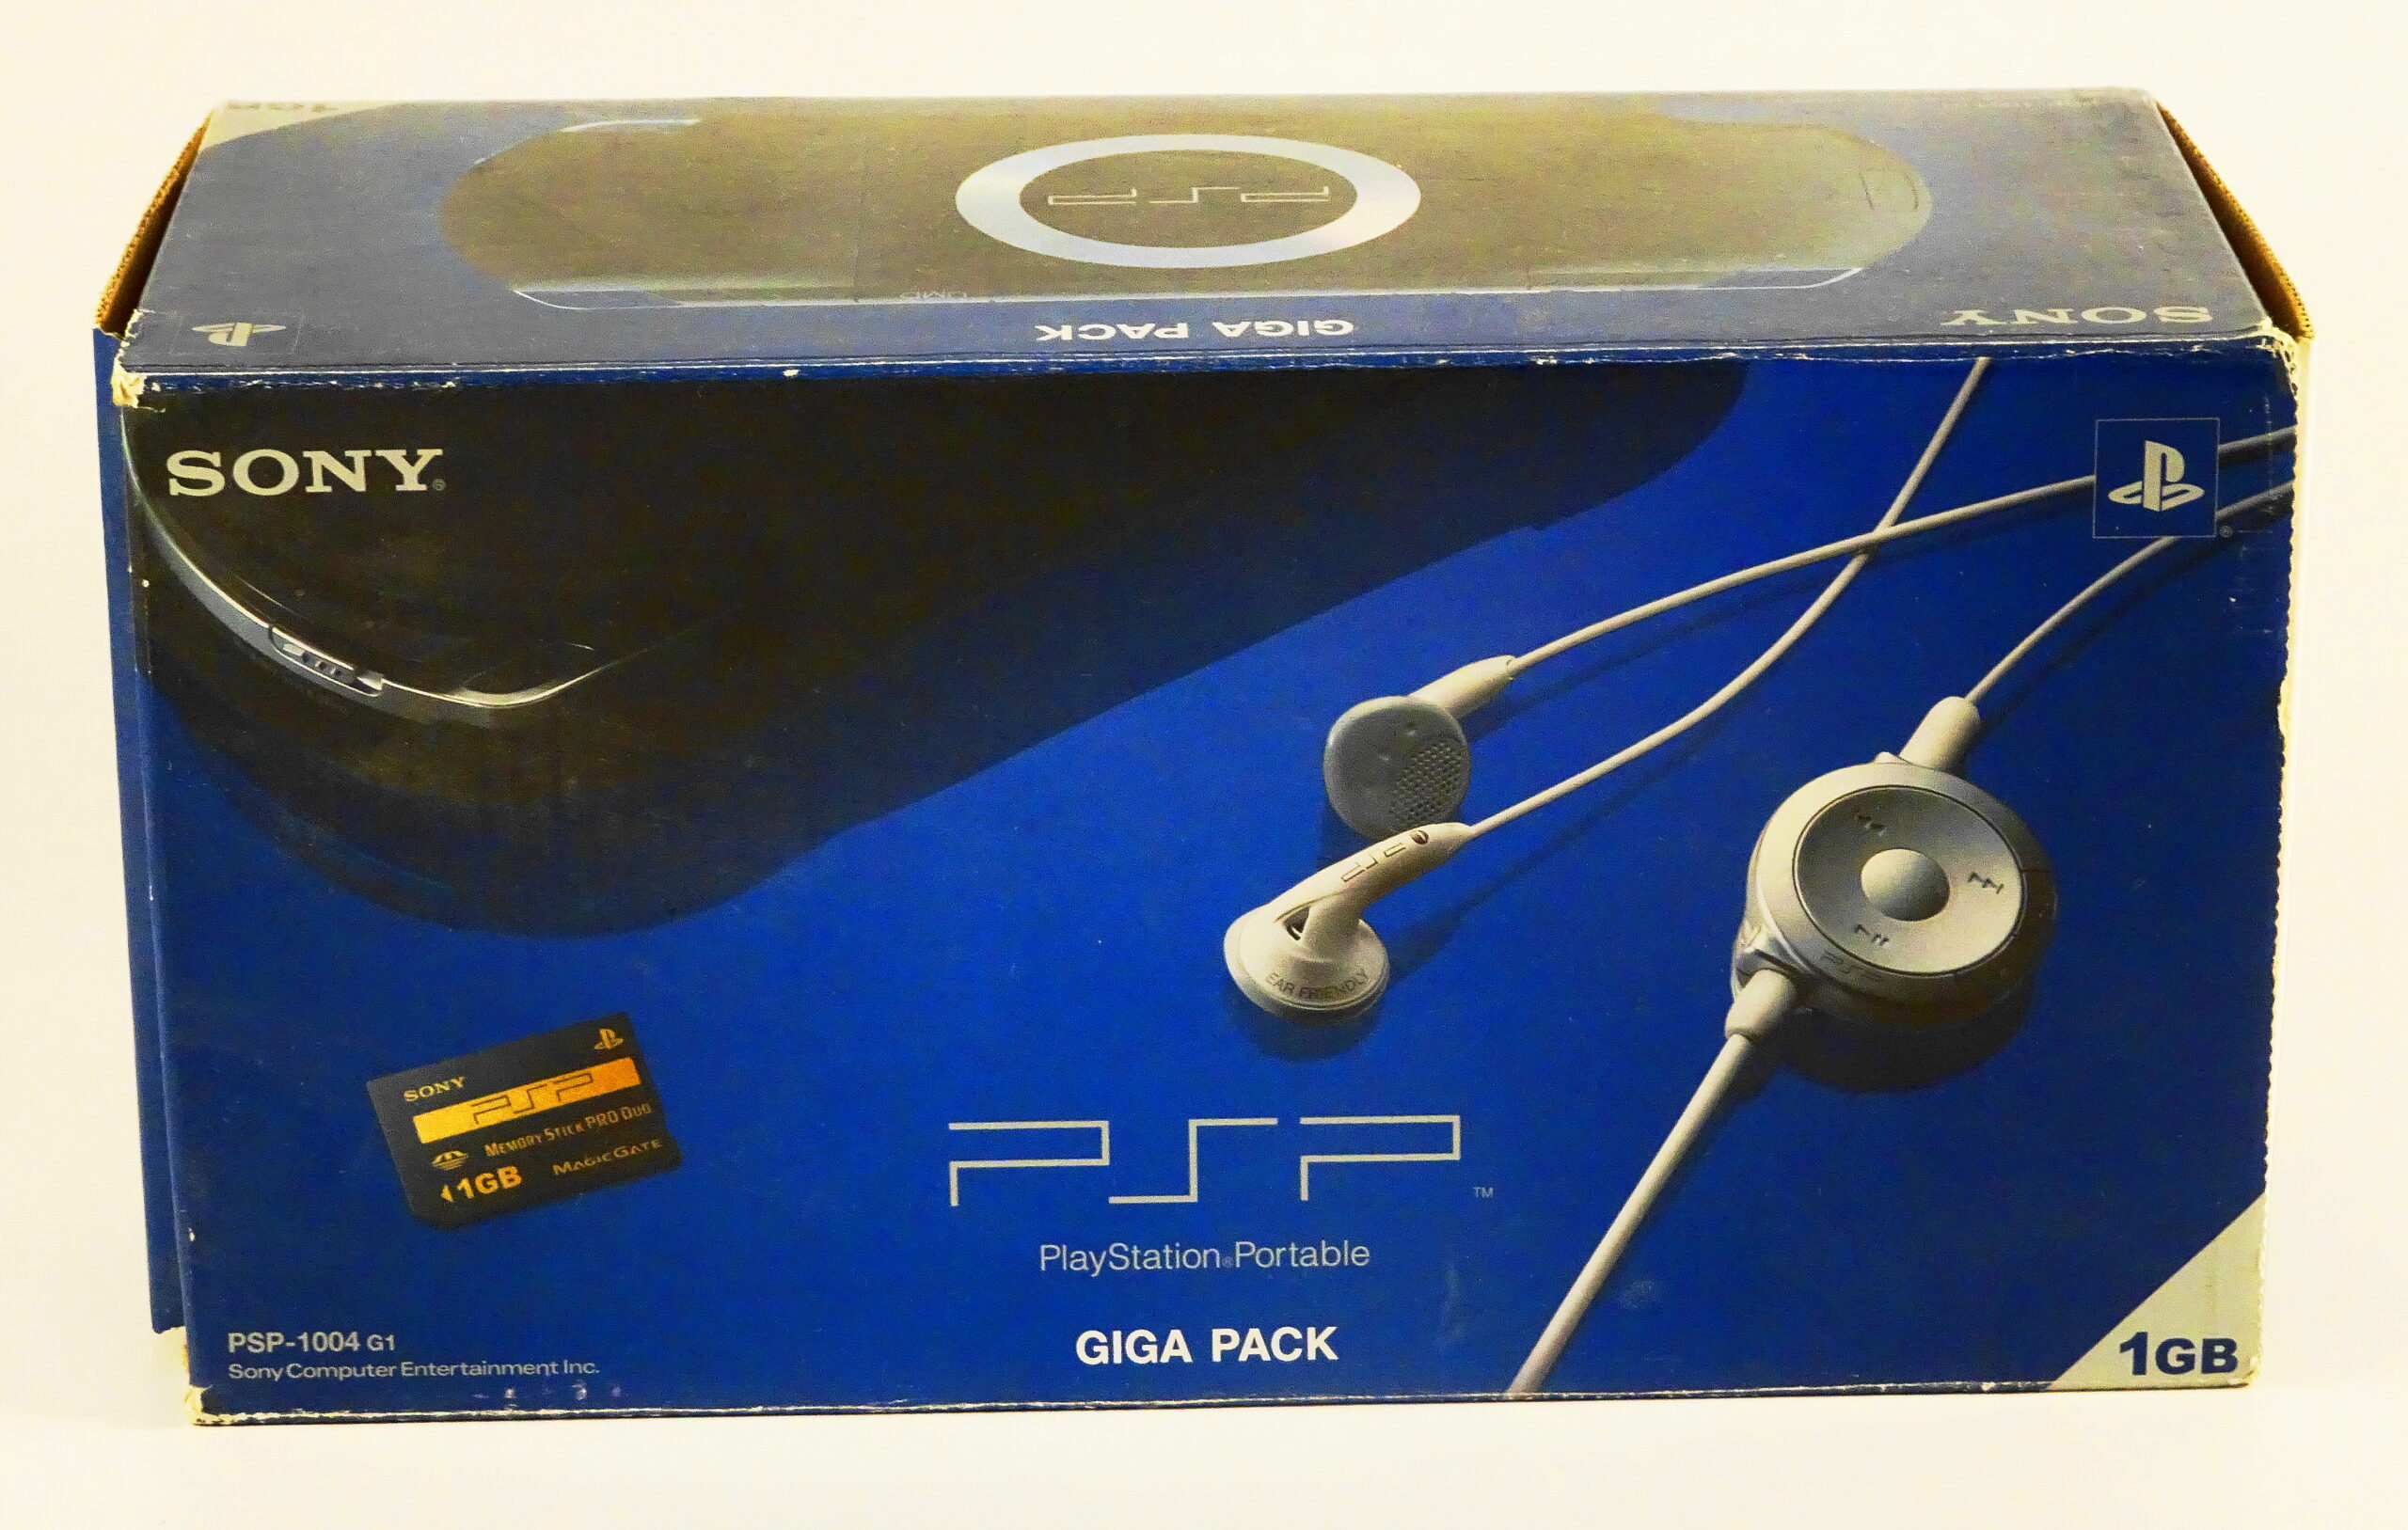 PSP 1004 G1 (Giga Pack 1GB) - SpilTema